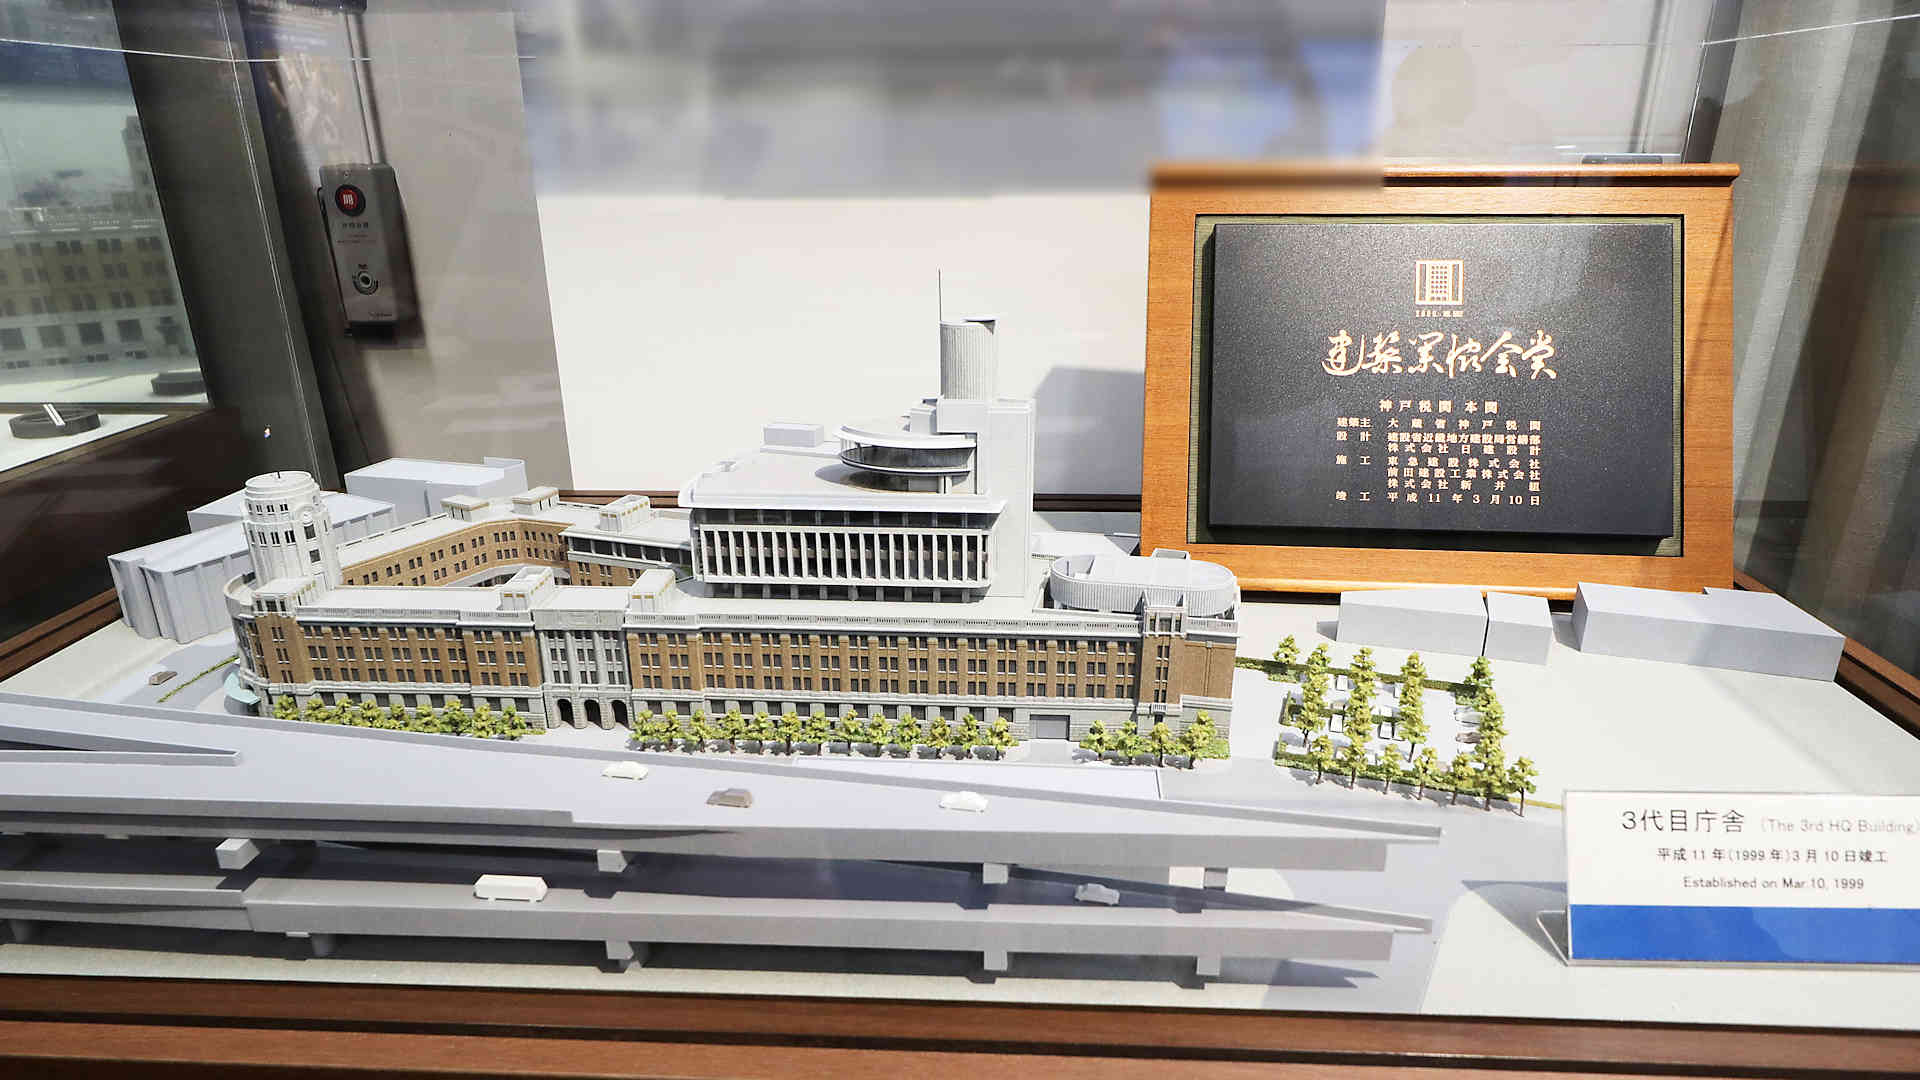 近代化産業遺産に認定された神戸税関庁舎の模型